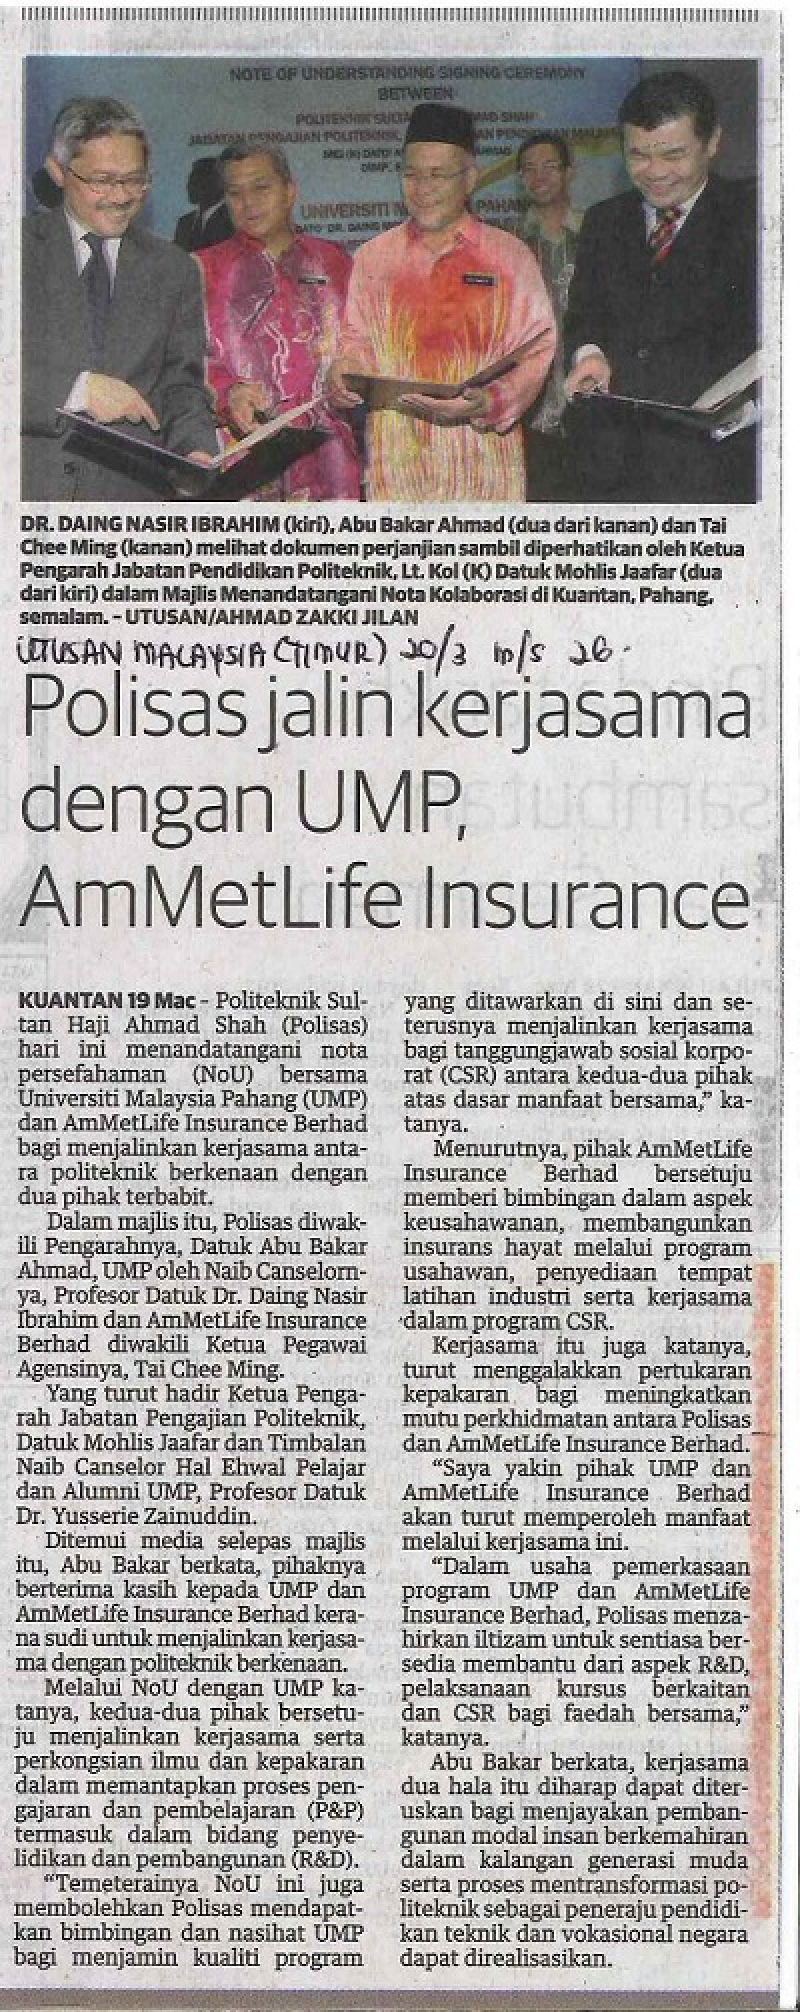 POLISAS Jalin Kerjasama dengan UMP,AmMetlife Insurance